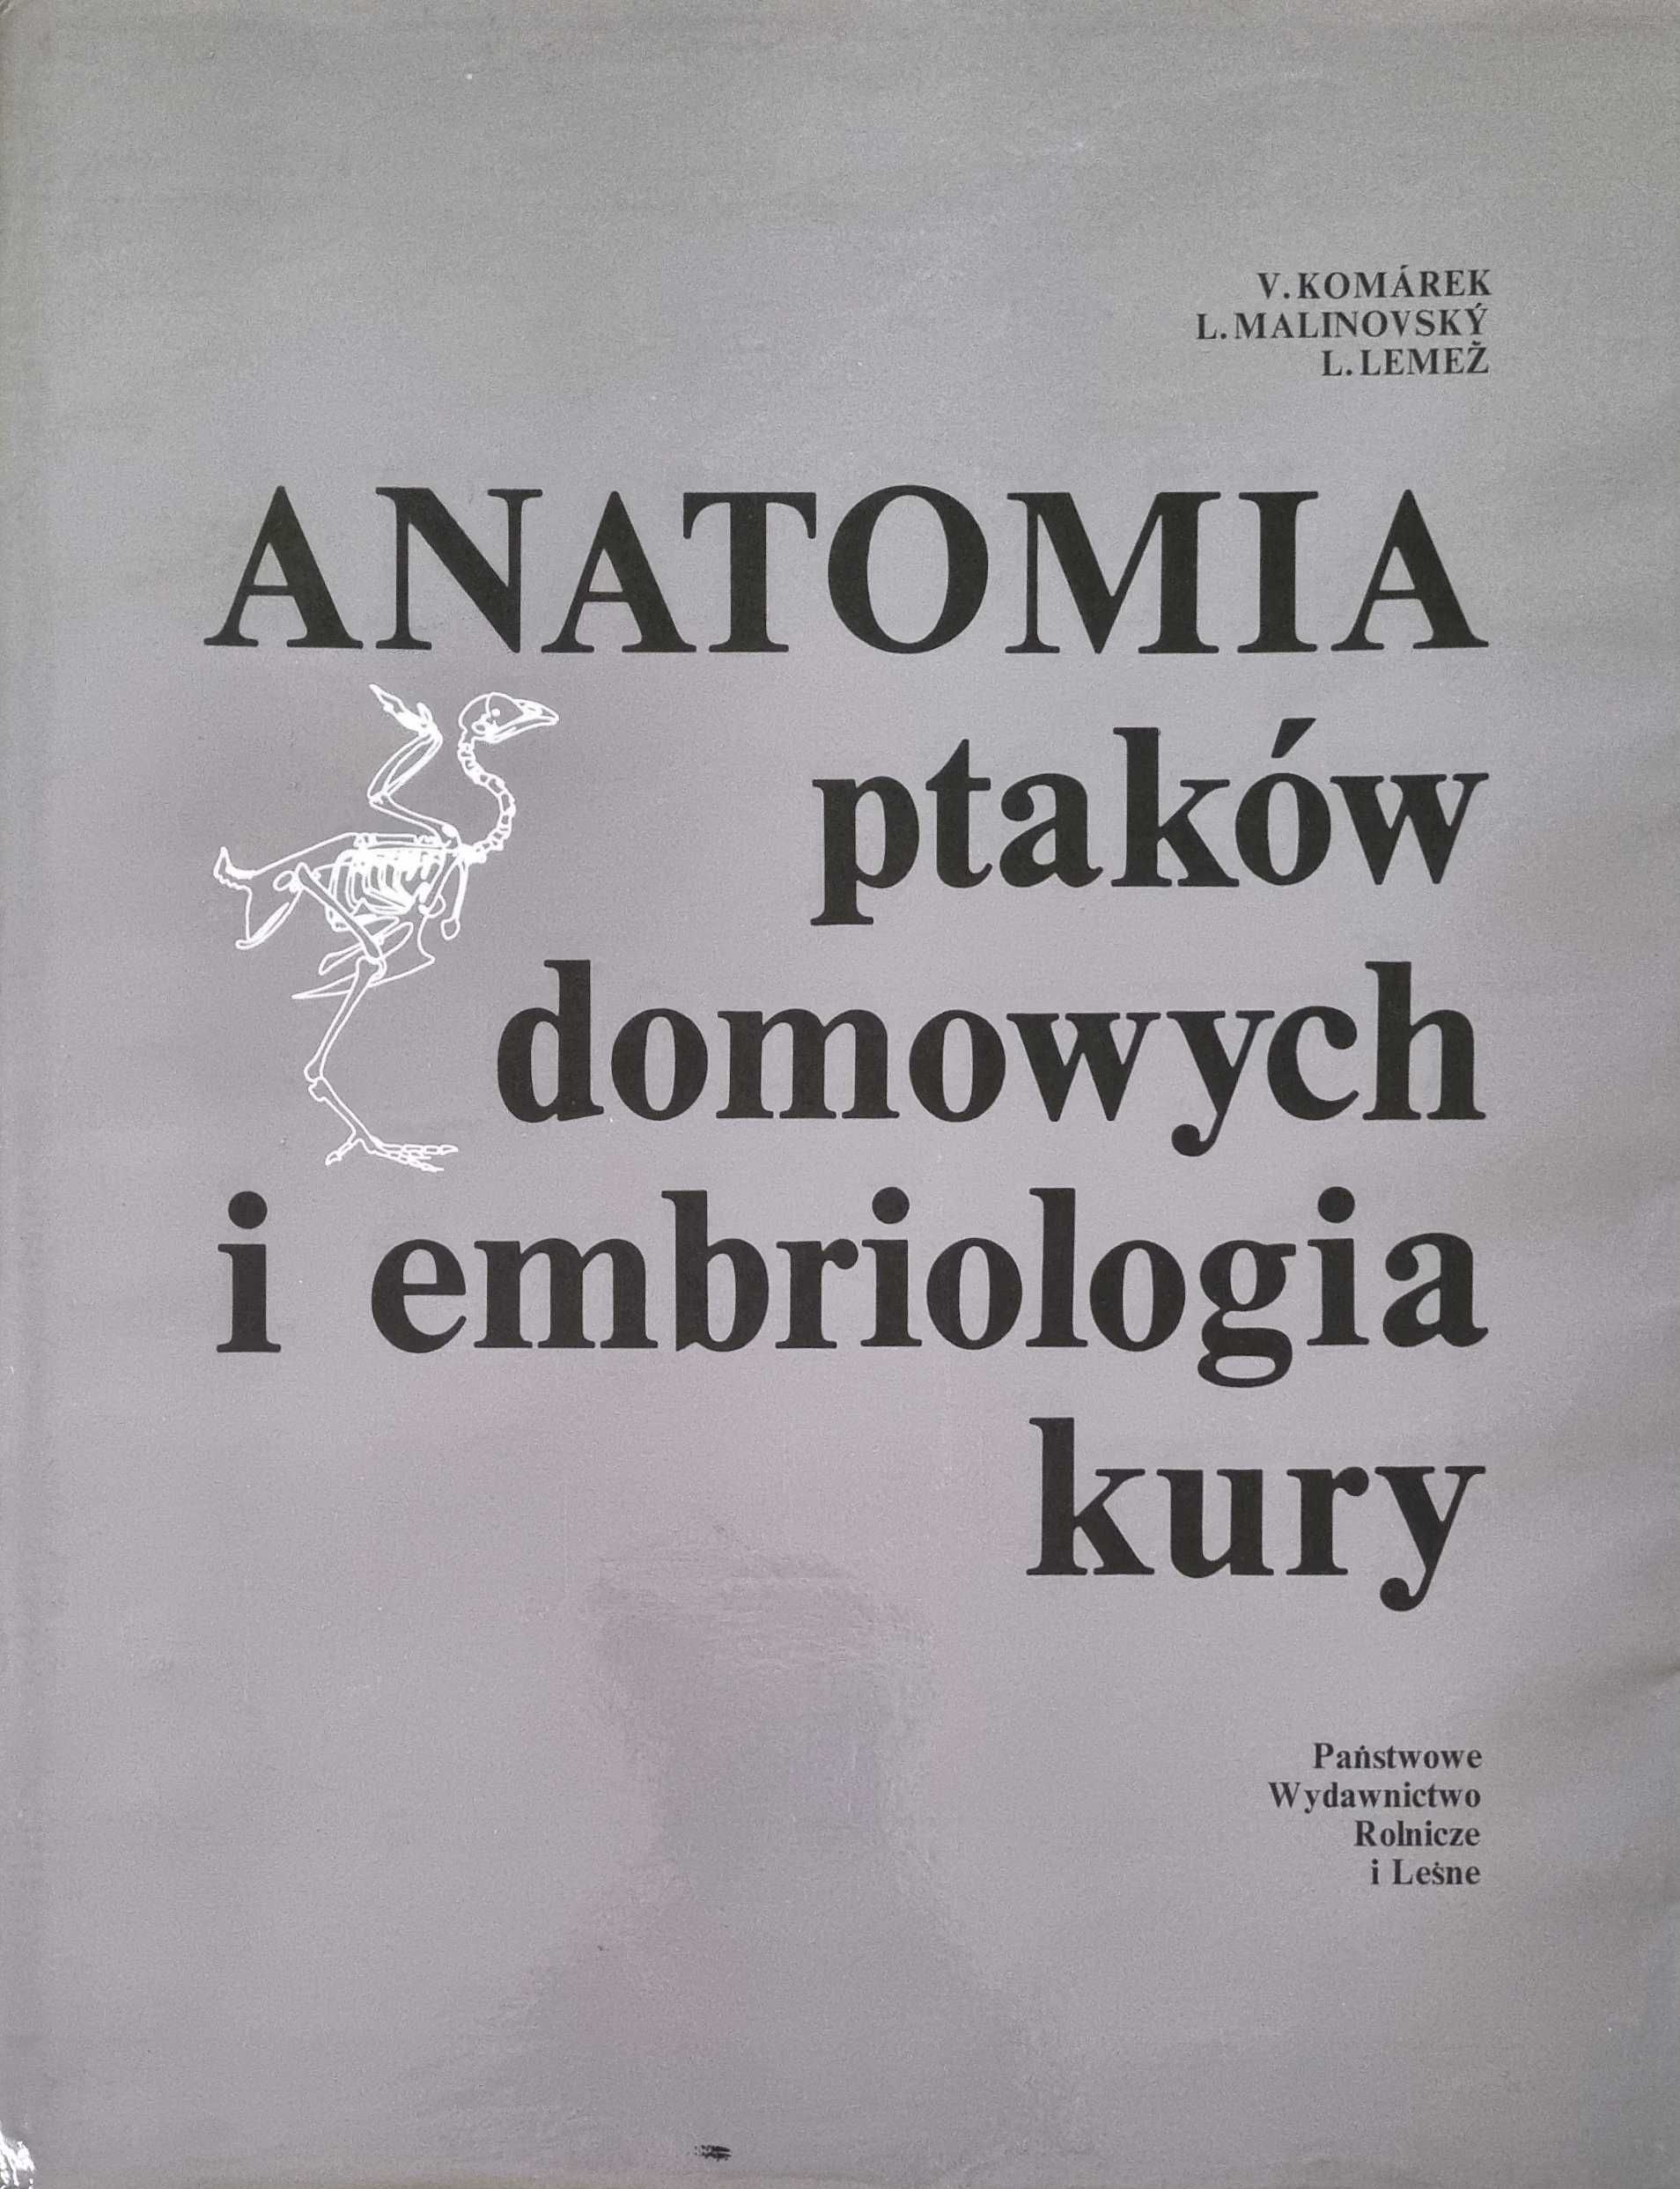 Anatomia ptaków domowych i embriologia kury - Komarek, Malinovsky